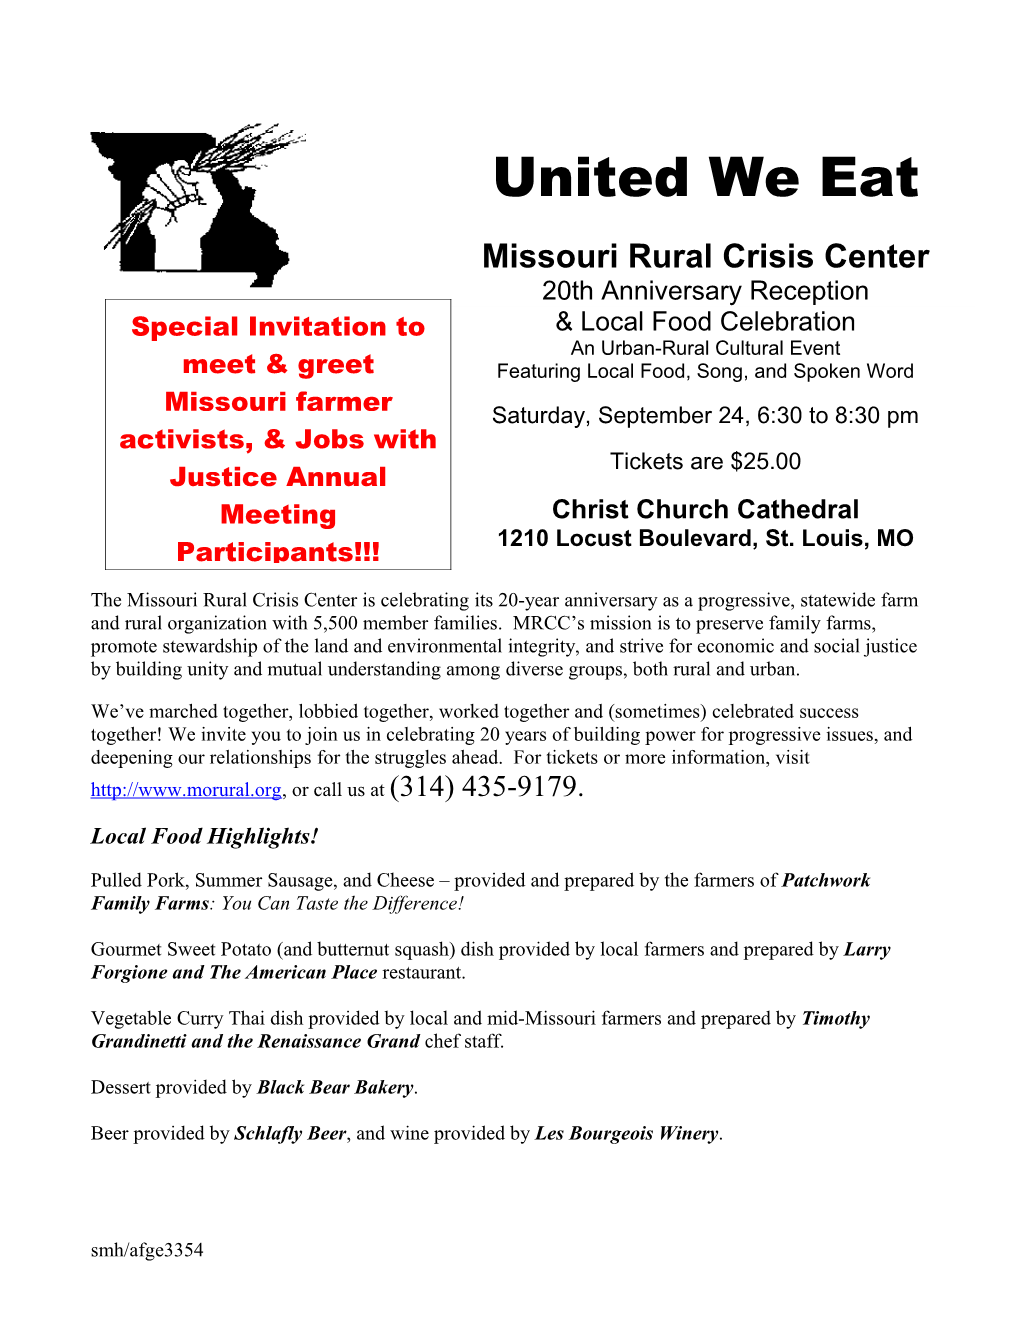 United We Eat, September 24